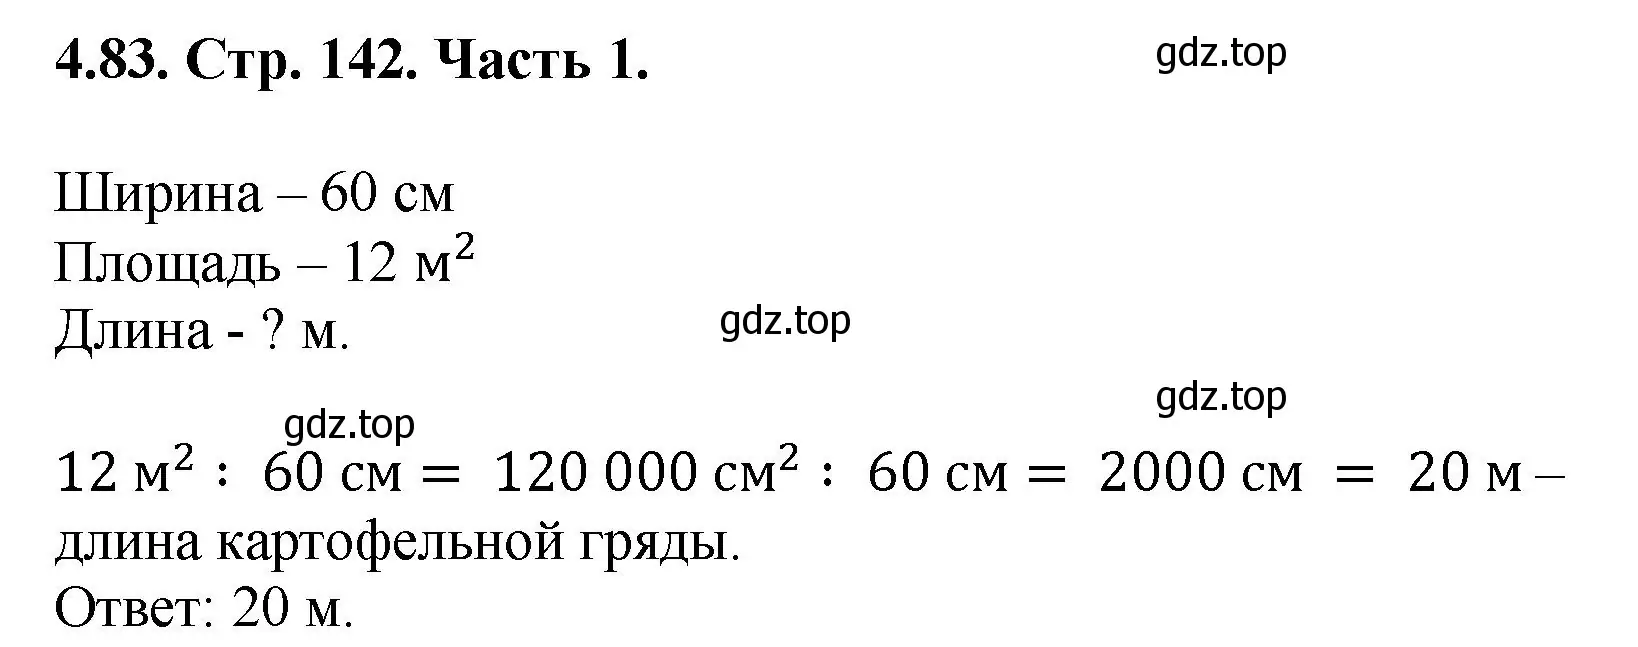 Решение номер 4.83 (страница 142) гдз по математике 5 класс Виленкин, Жохов, учебник 1 часть